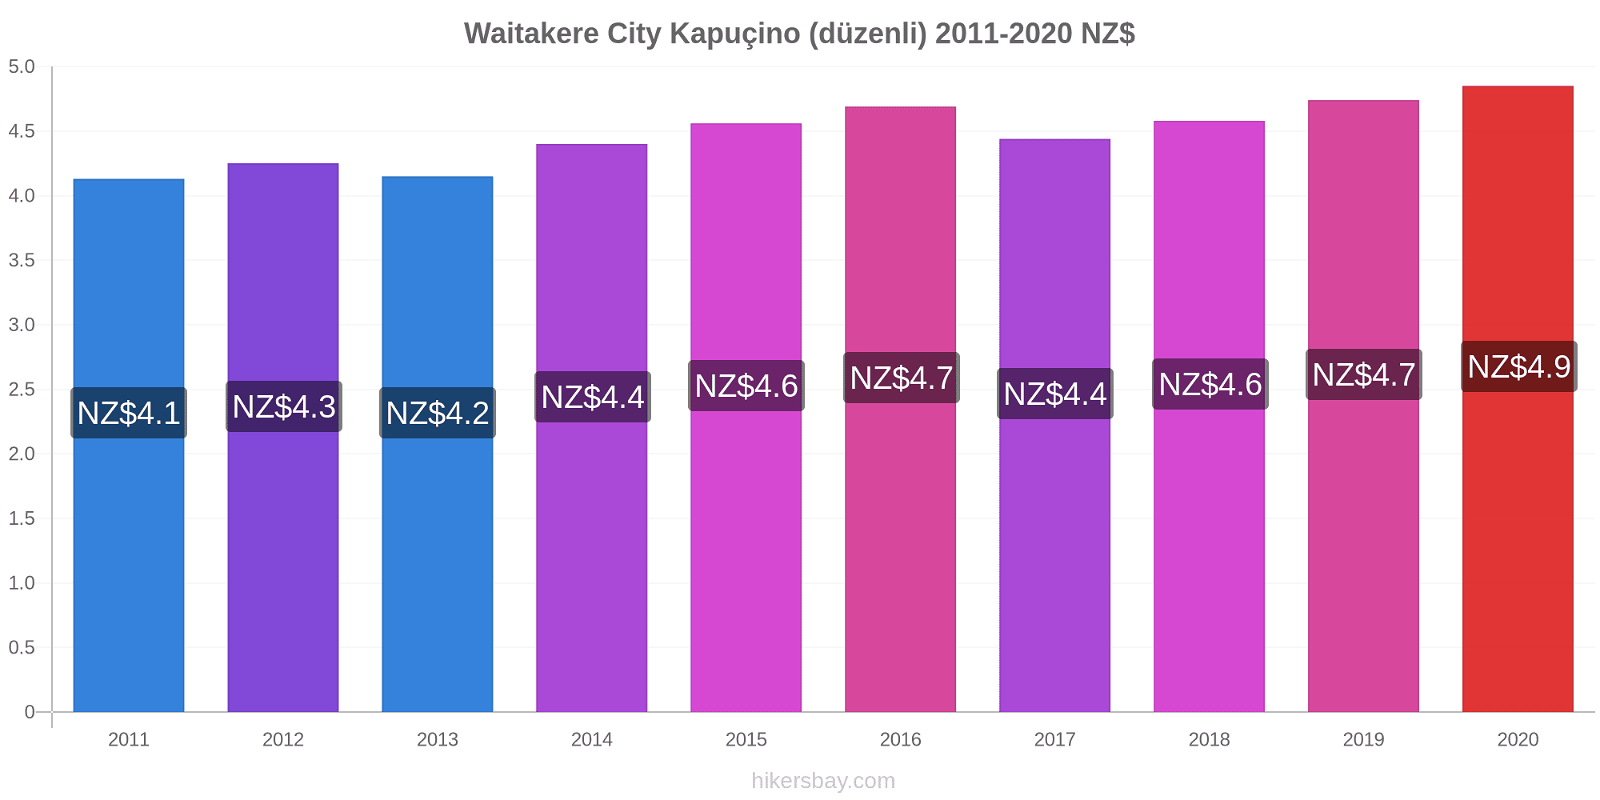 Waitakere City fiyat değişiklikleri Kapuçino (düzenli) hikersbay.com